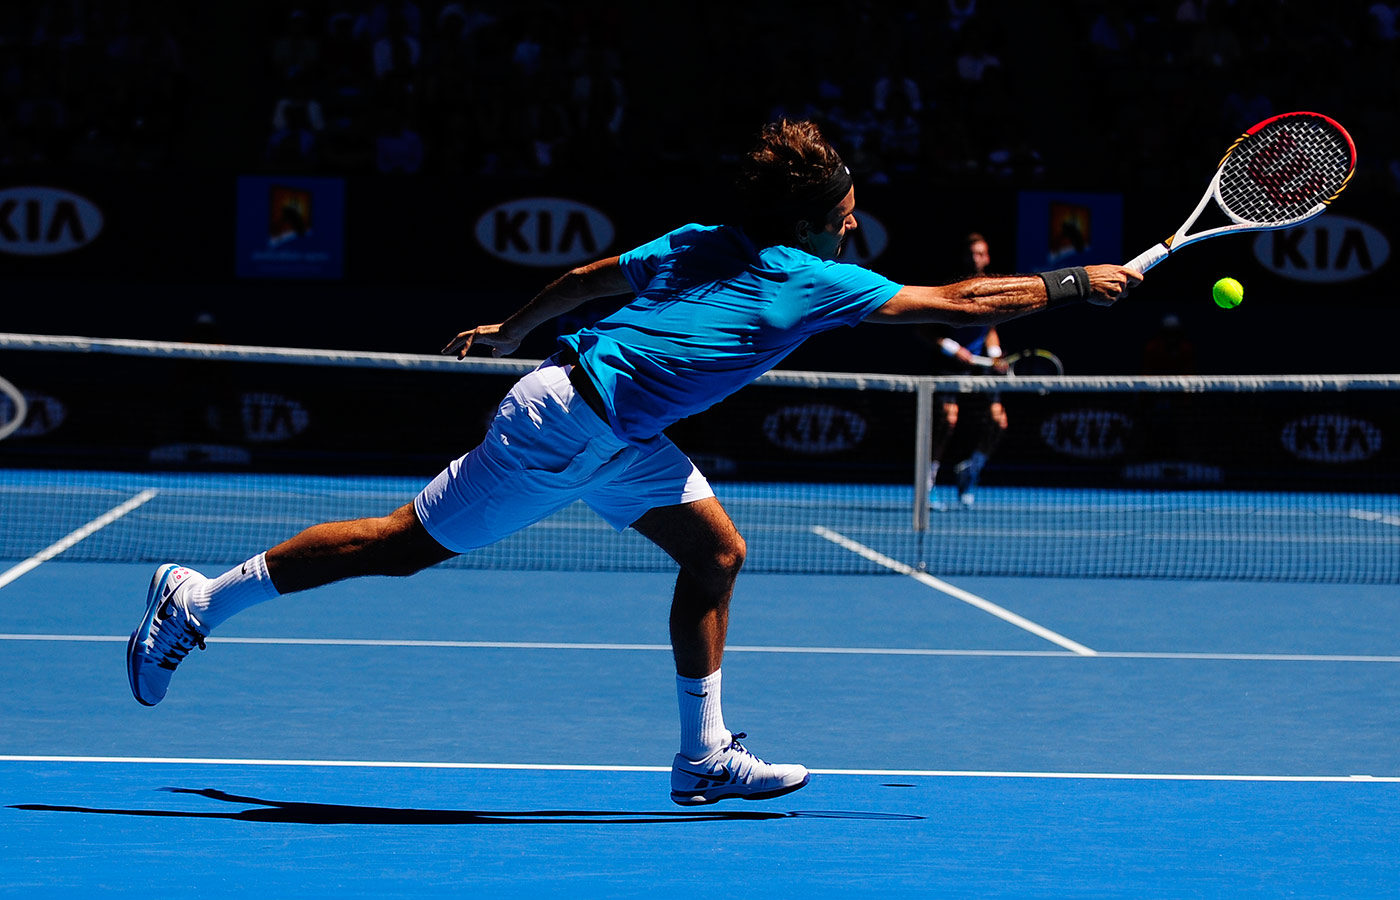 Roger Federer’s first match of 2013 – Round 1 of the Australian Open | rogerfedererfan